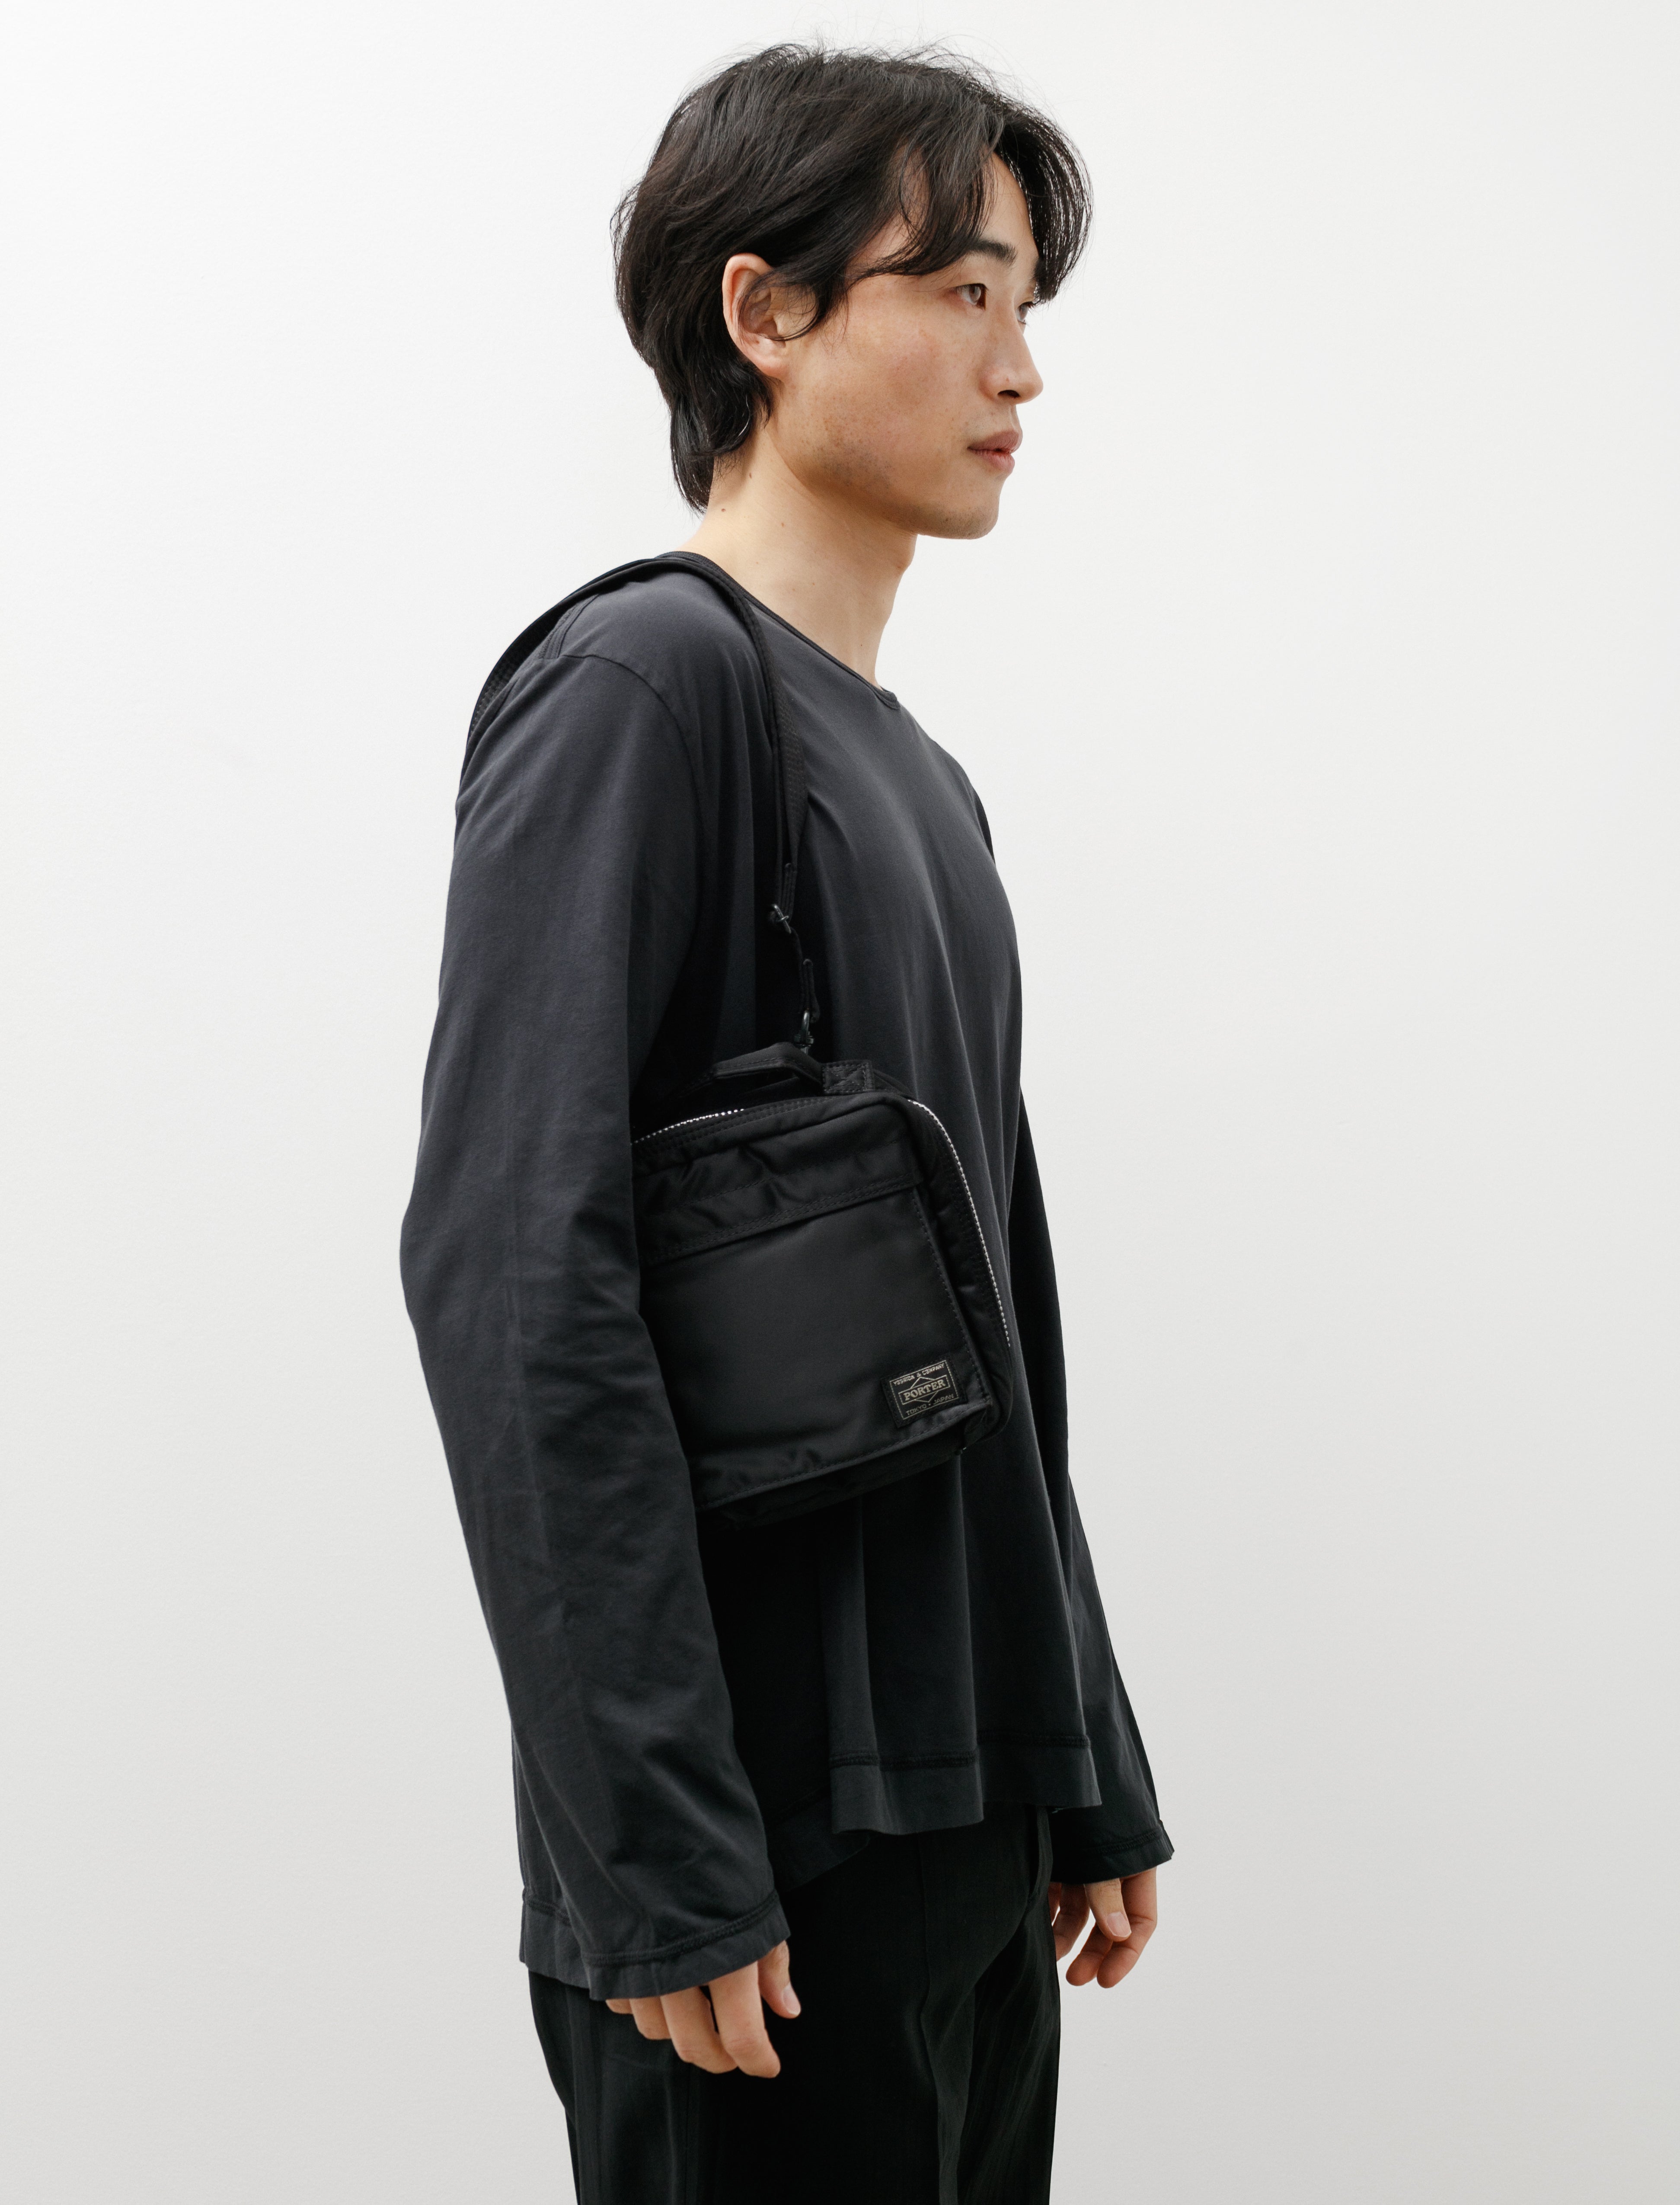 Porter-Yoshida & Co. TANKER SHOULDER BAG Black